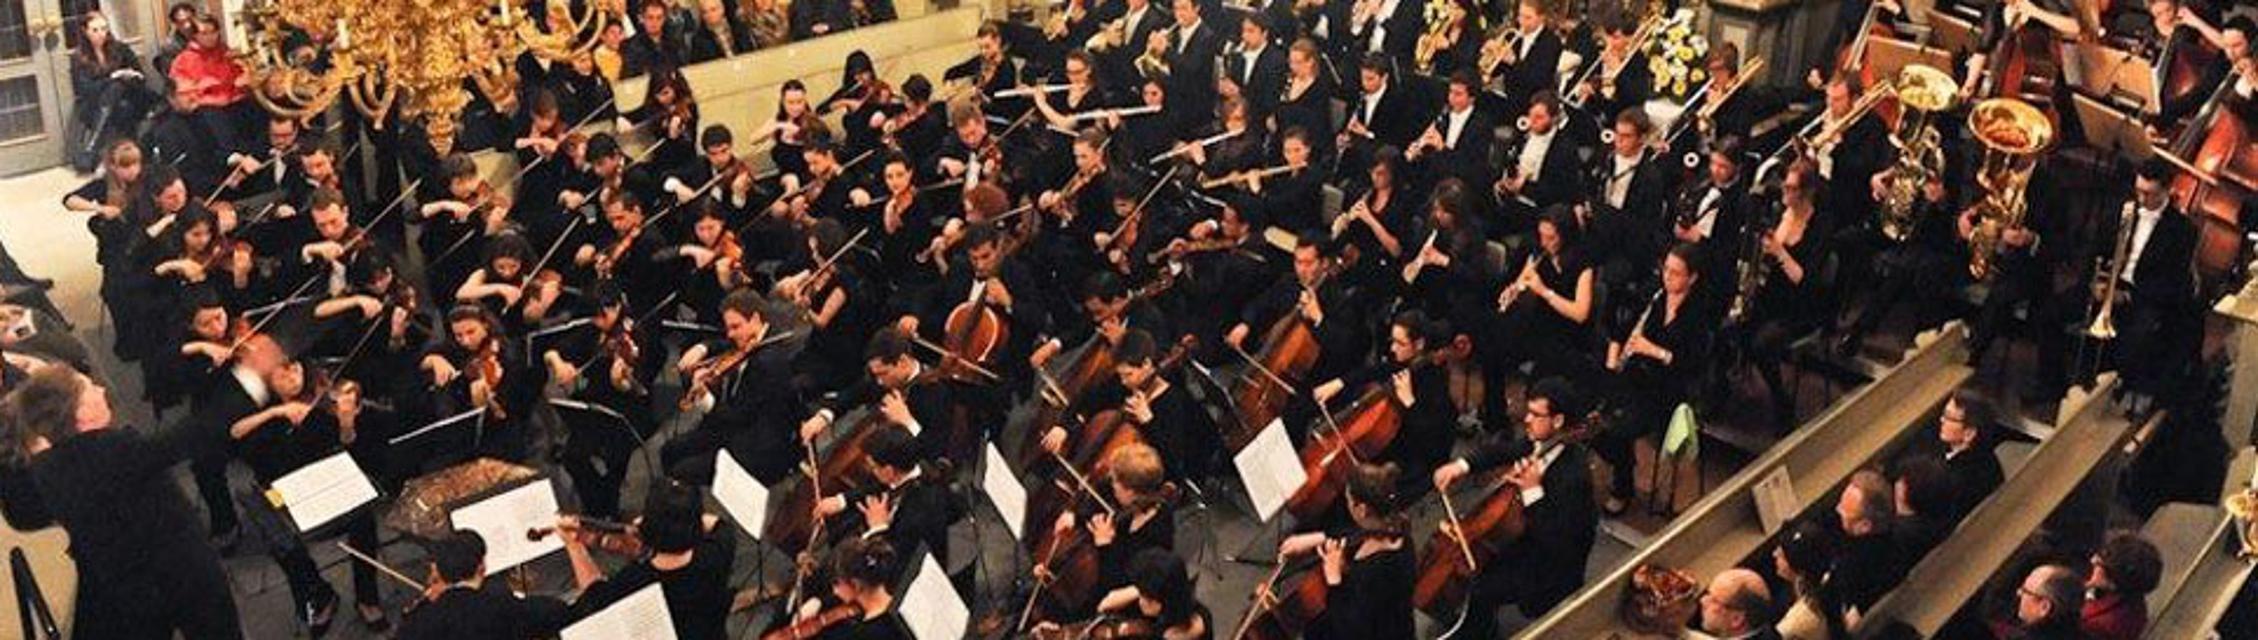 Das Bayreuther Osterfestival bietet hochkarätigen Musikgenuss von Klassik bis Jazz von der Internationalen Jungen Orchesterakademie.